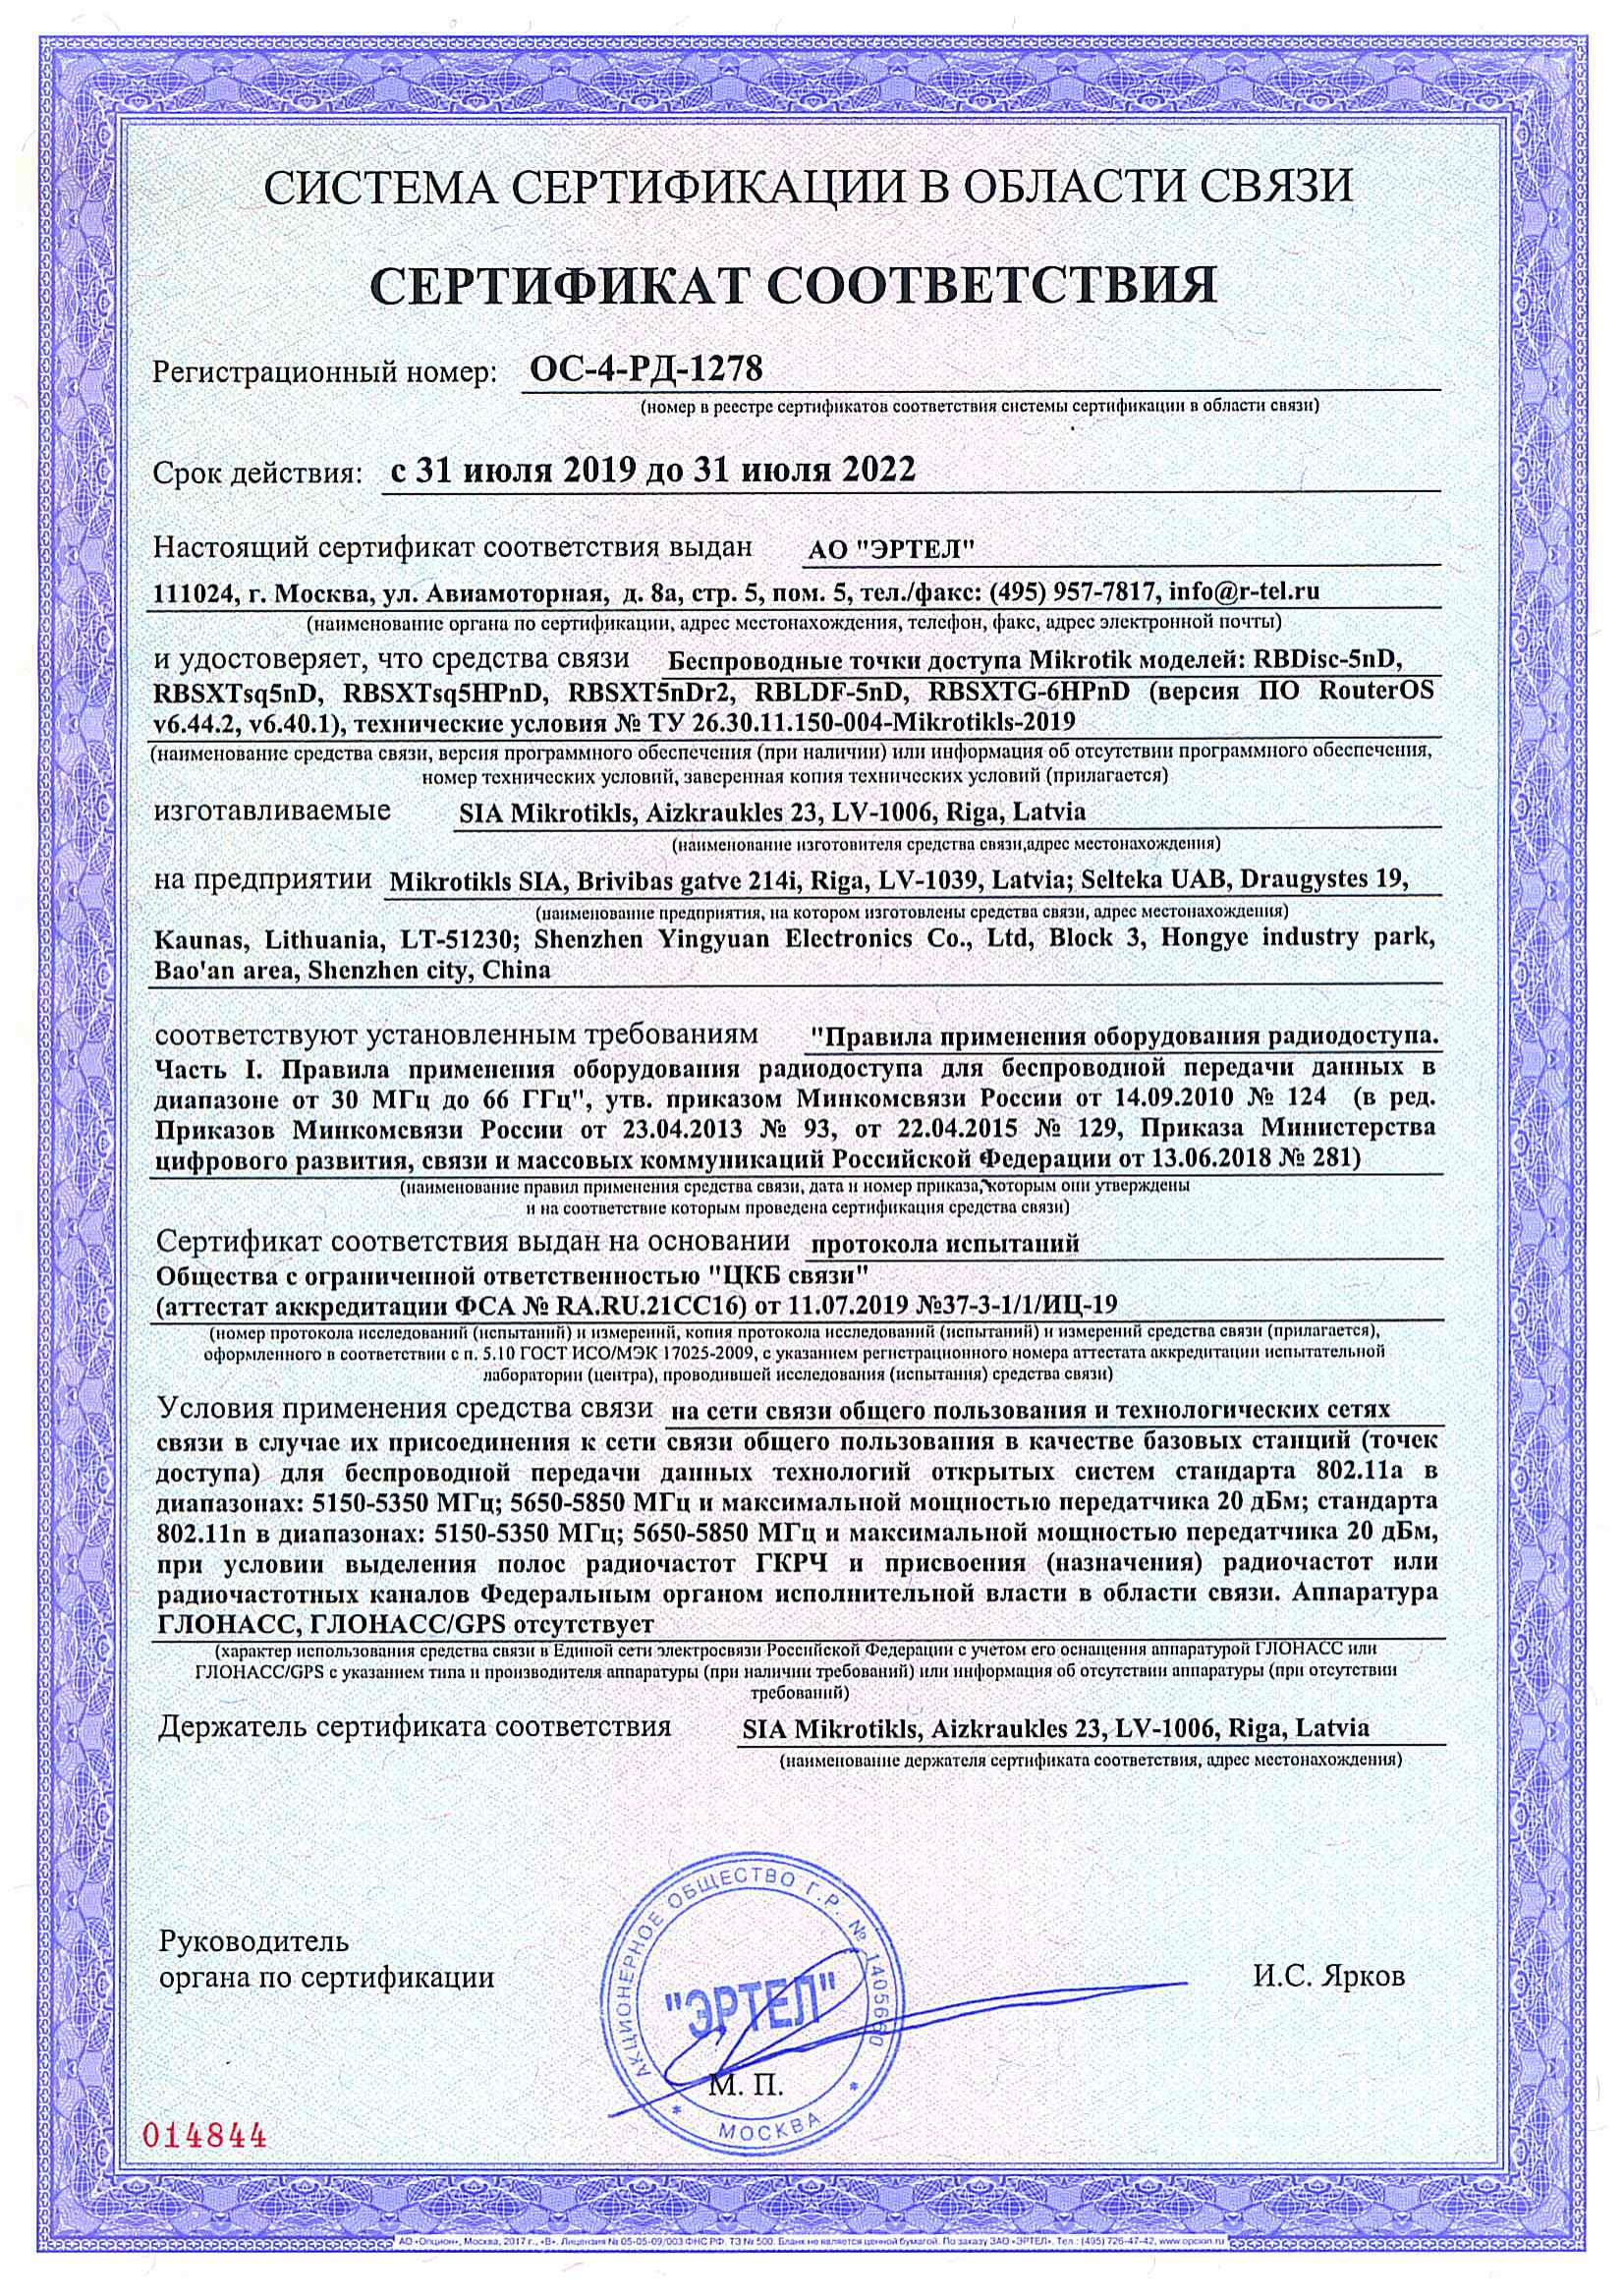 Сертификат соответствия в области связи ОС-4-РД-1278